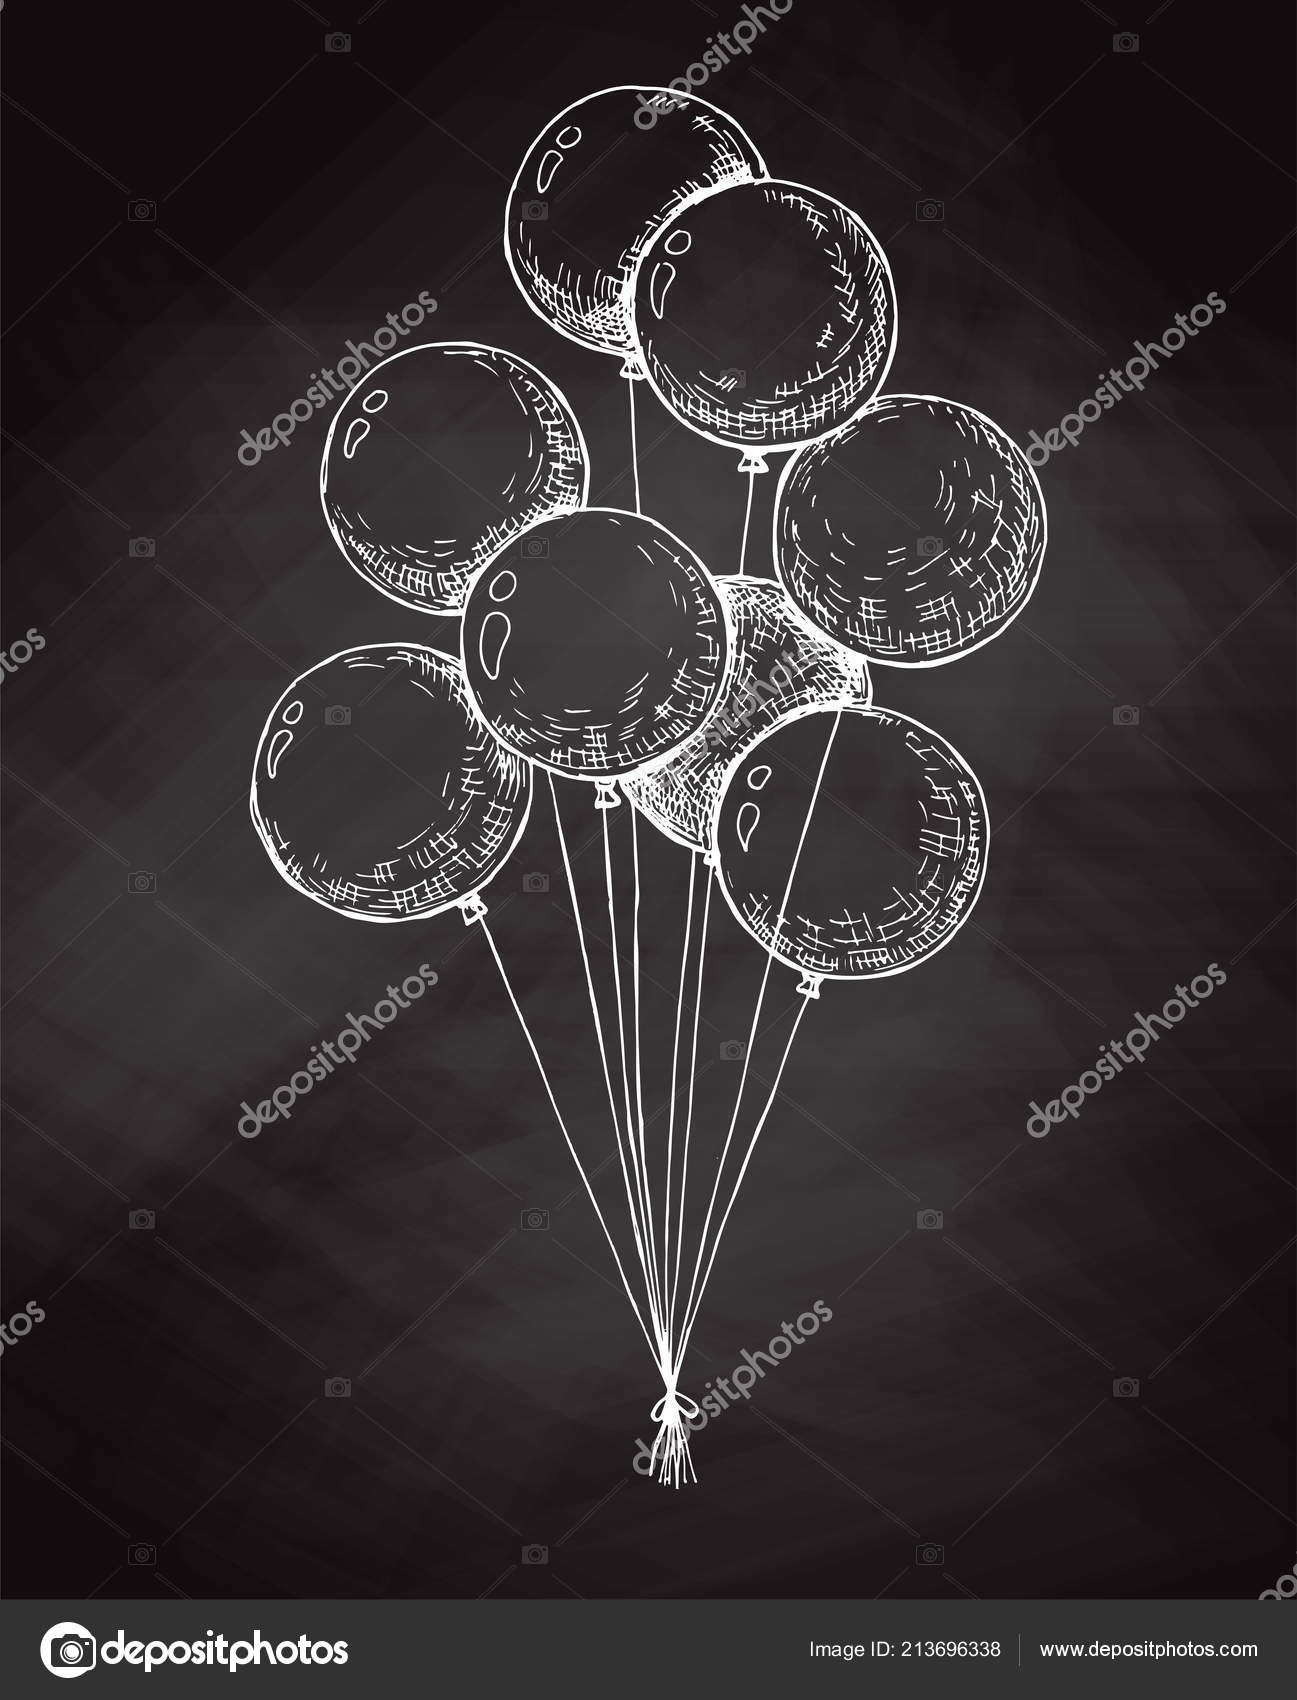 Balloon String Illustrations & Vectors